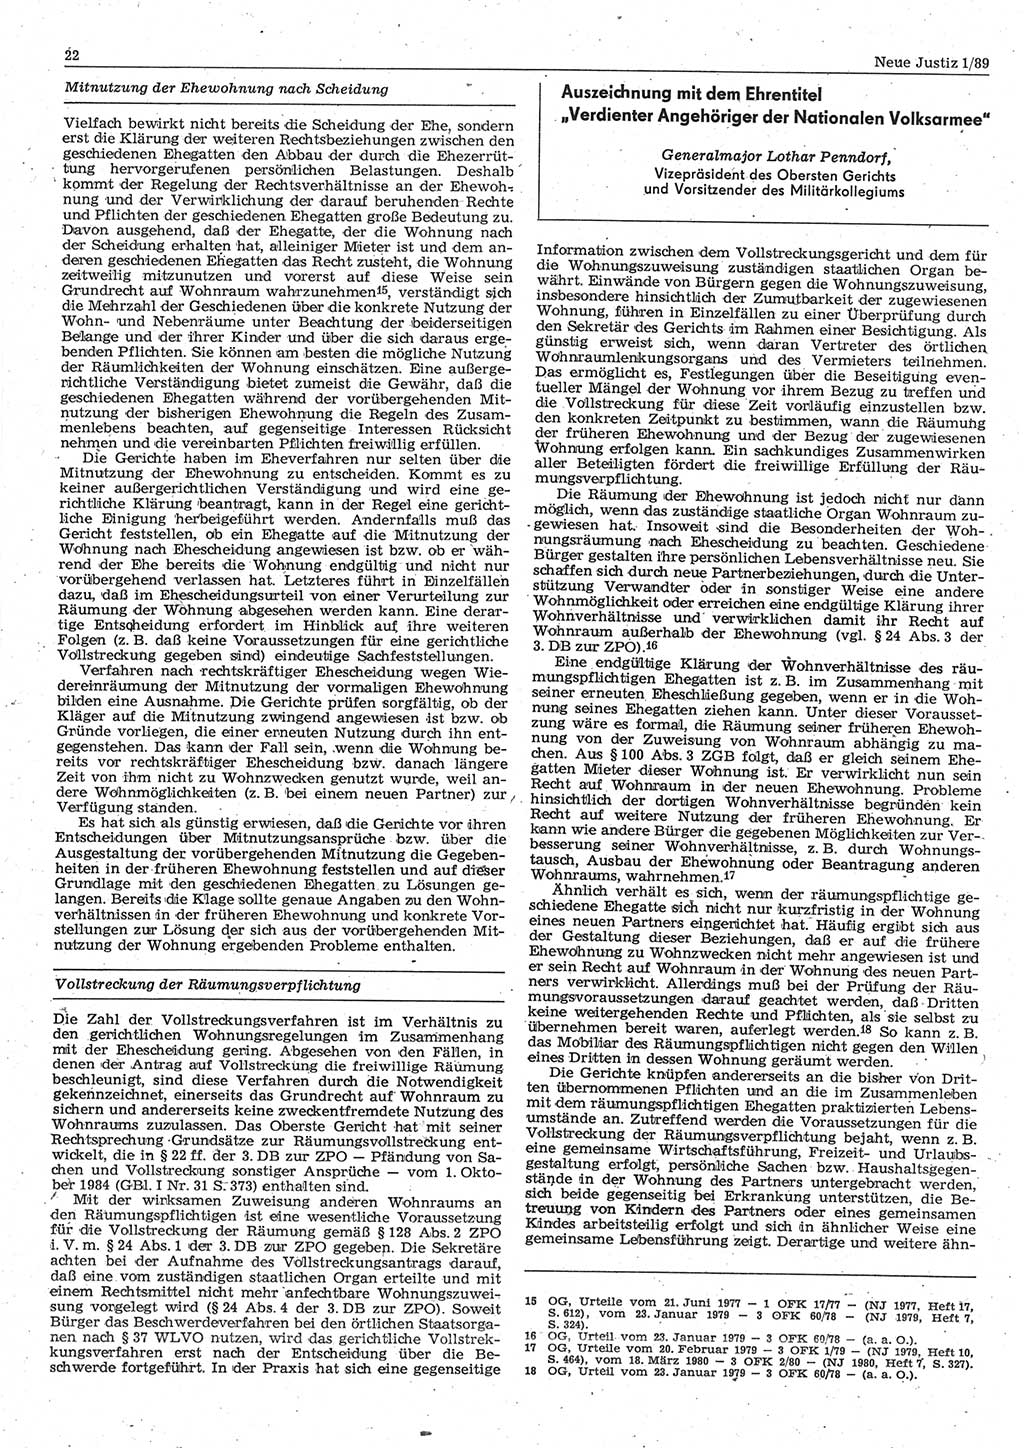 Neue Justiz (NJ), Zeitschrift für sozialistisches Recht und Gesetzlichkeit [Deutsche Demokratische Republik (DDR)], 43. Jahrgang 1989, Seite 22 (NJ DDR 1989, S. 22)